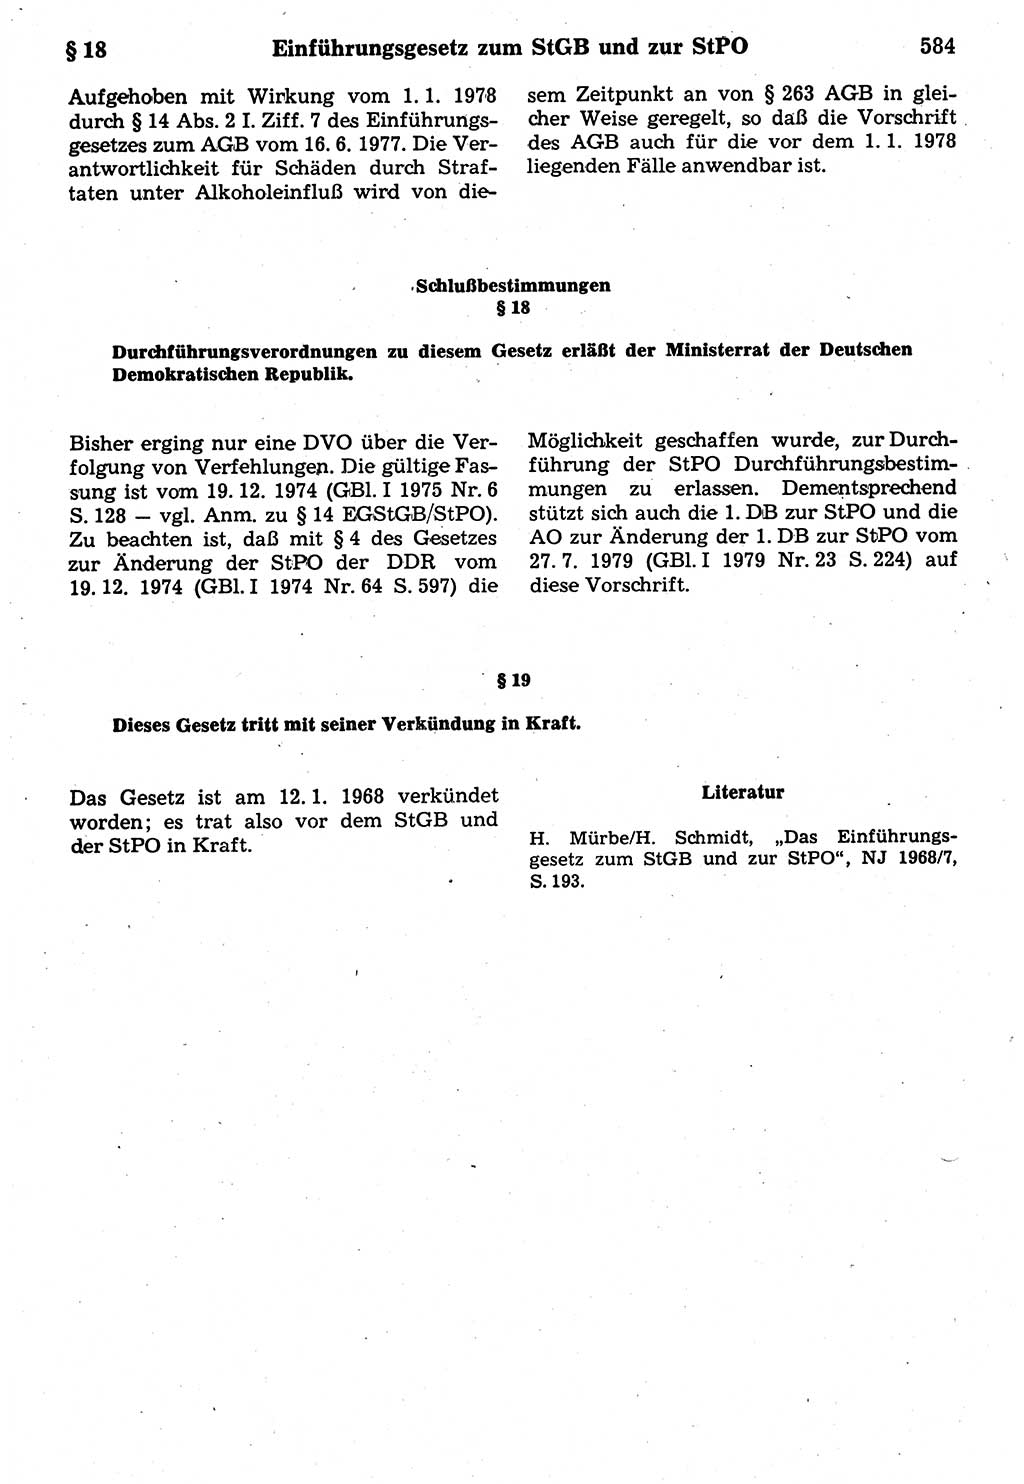 Strafrecht der Deutschen Demokratischen Republik (DDR), Kommentar zum Strafgesetzbuch (StGB) 1987, Seite 584 (Strafr. DDR Komm. StGB 1987, S. 584)